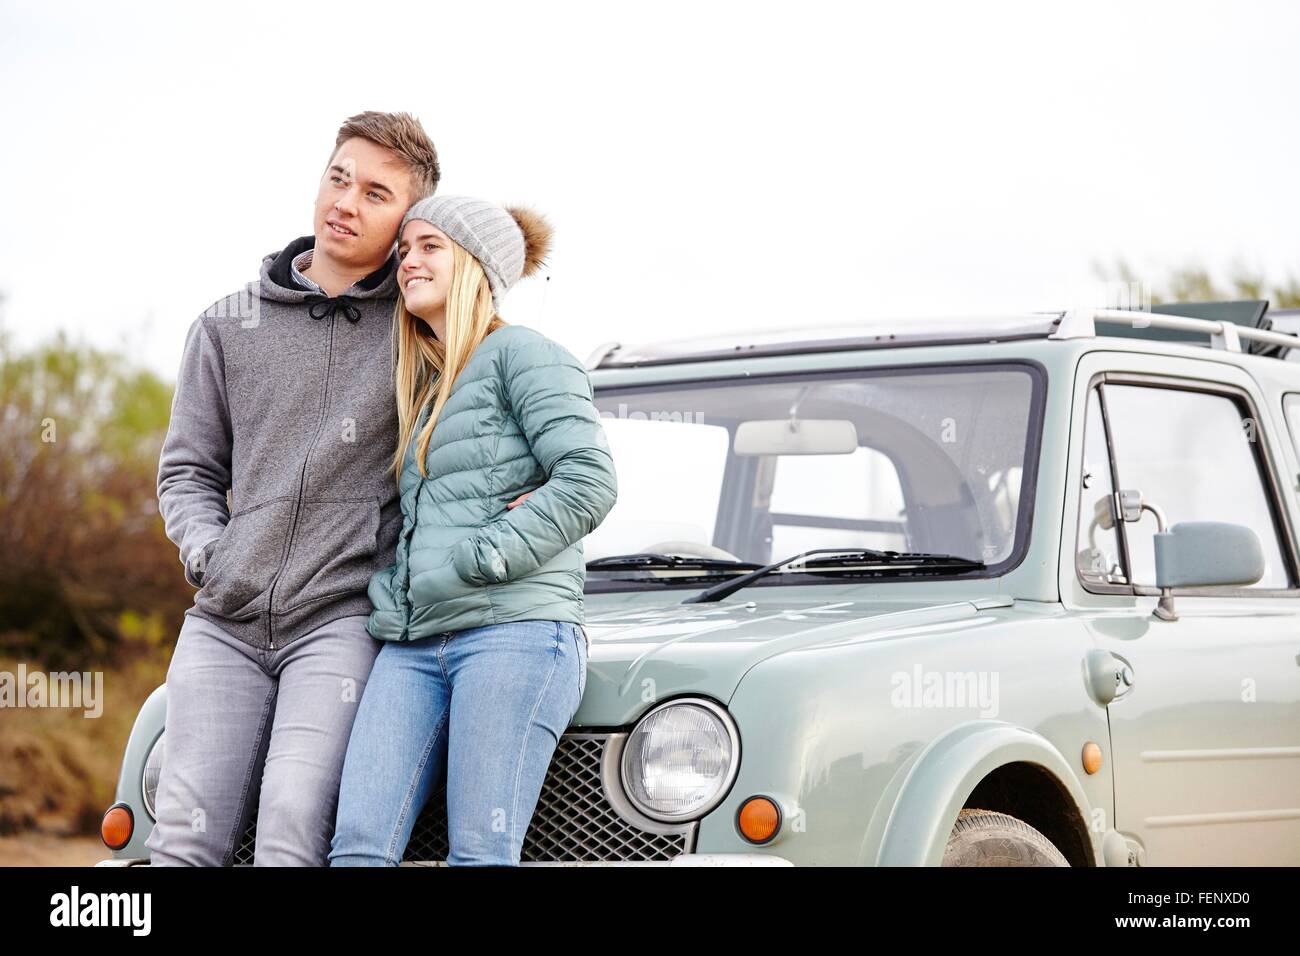 Romántica pareja joven apoyado en coche a la playa Foto de stock